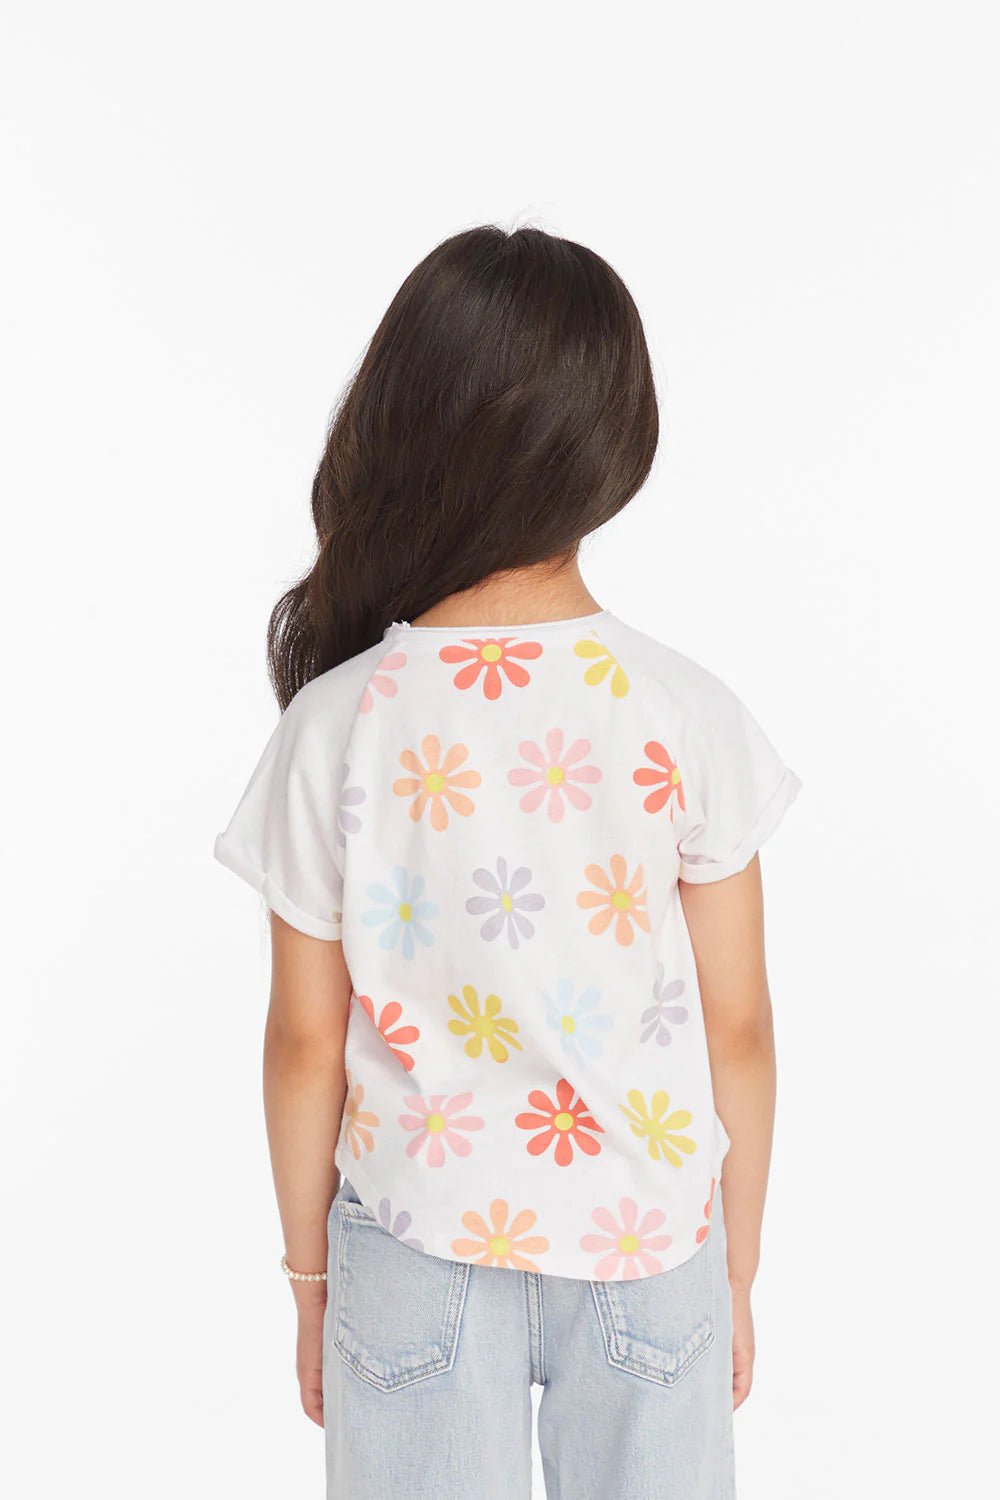 Chaser Kids Allover Flower Shirt in White - Estilo Boutique